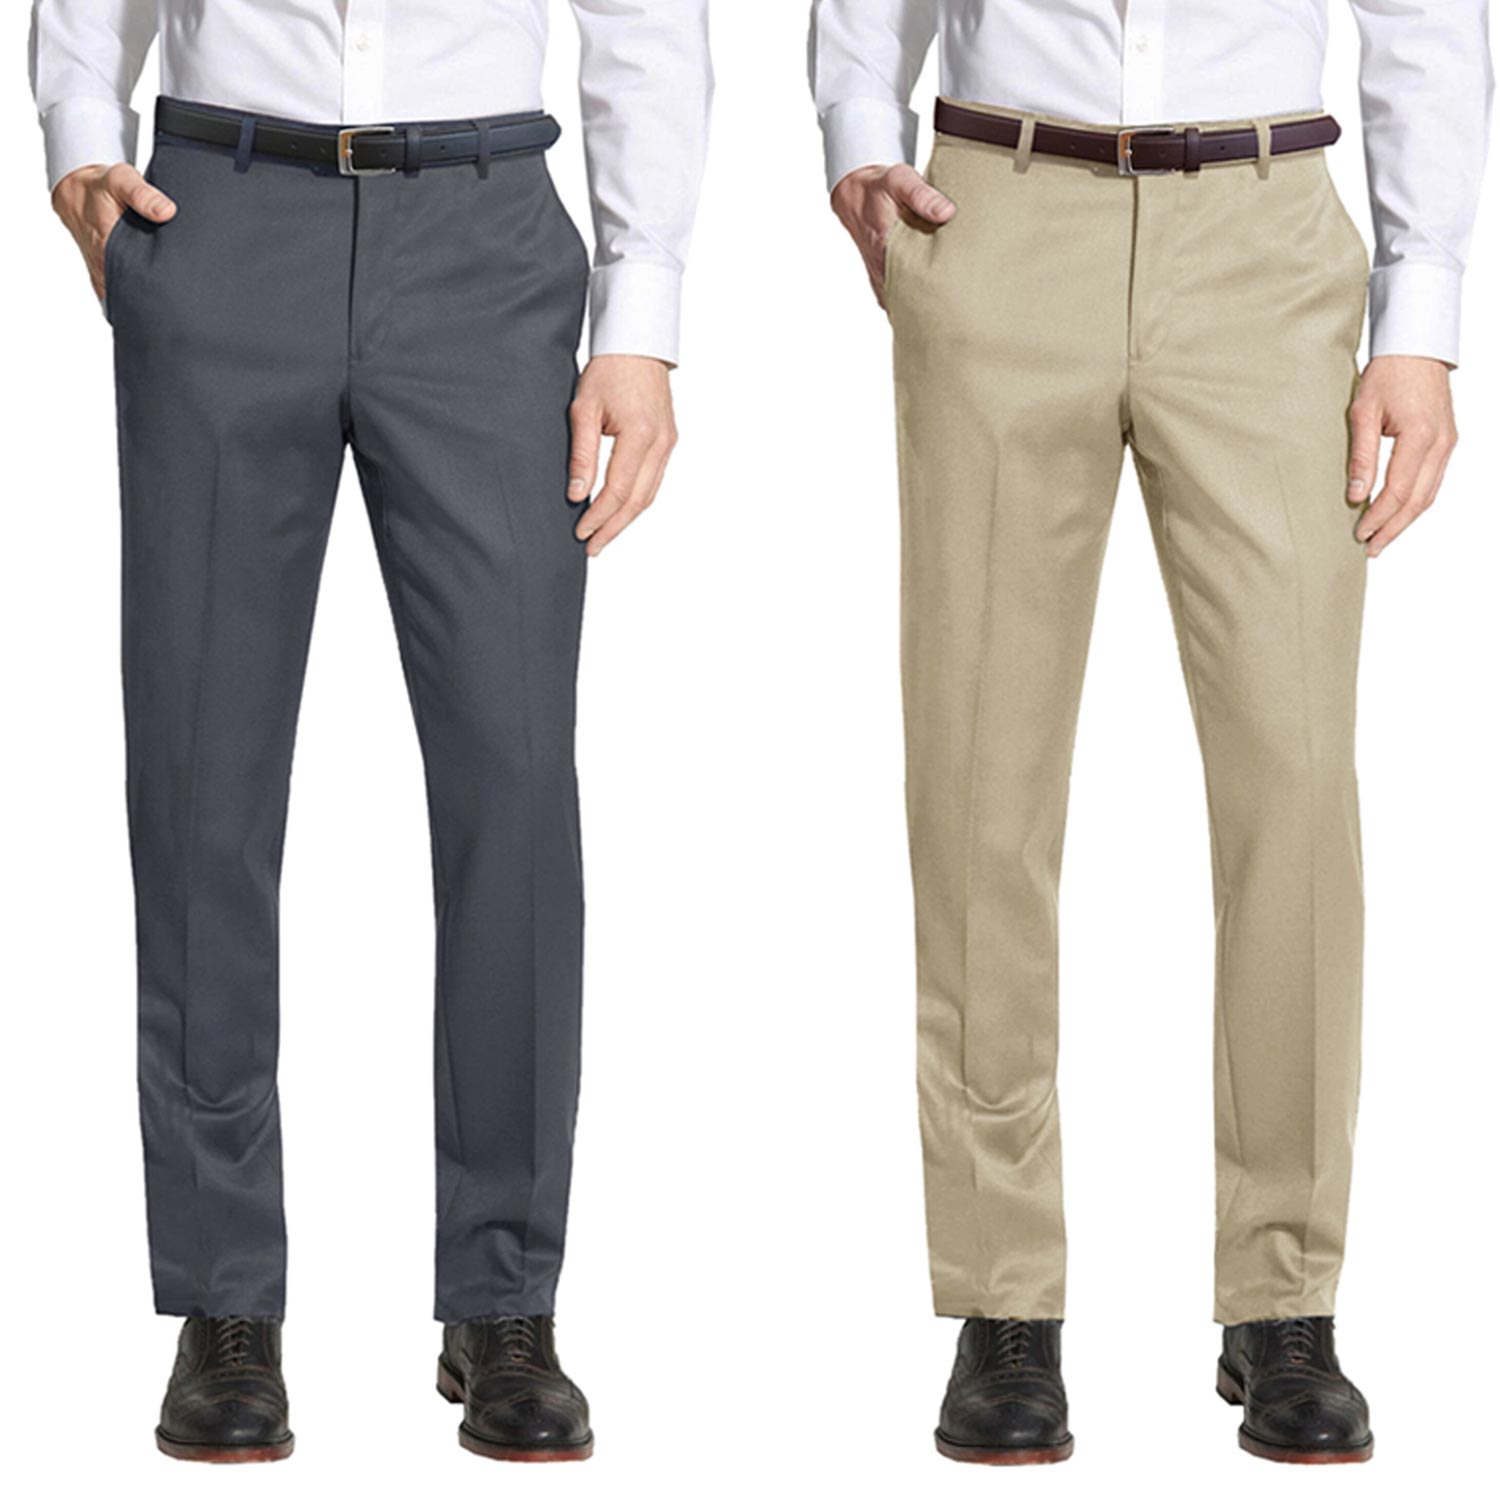 2 Pack Men's Slim-Fit Belted Dress Pants